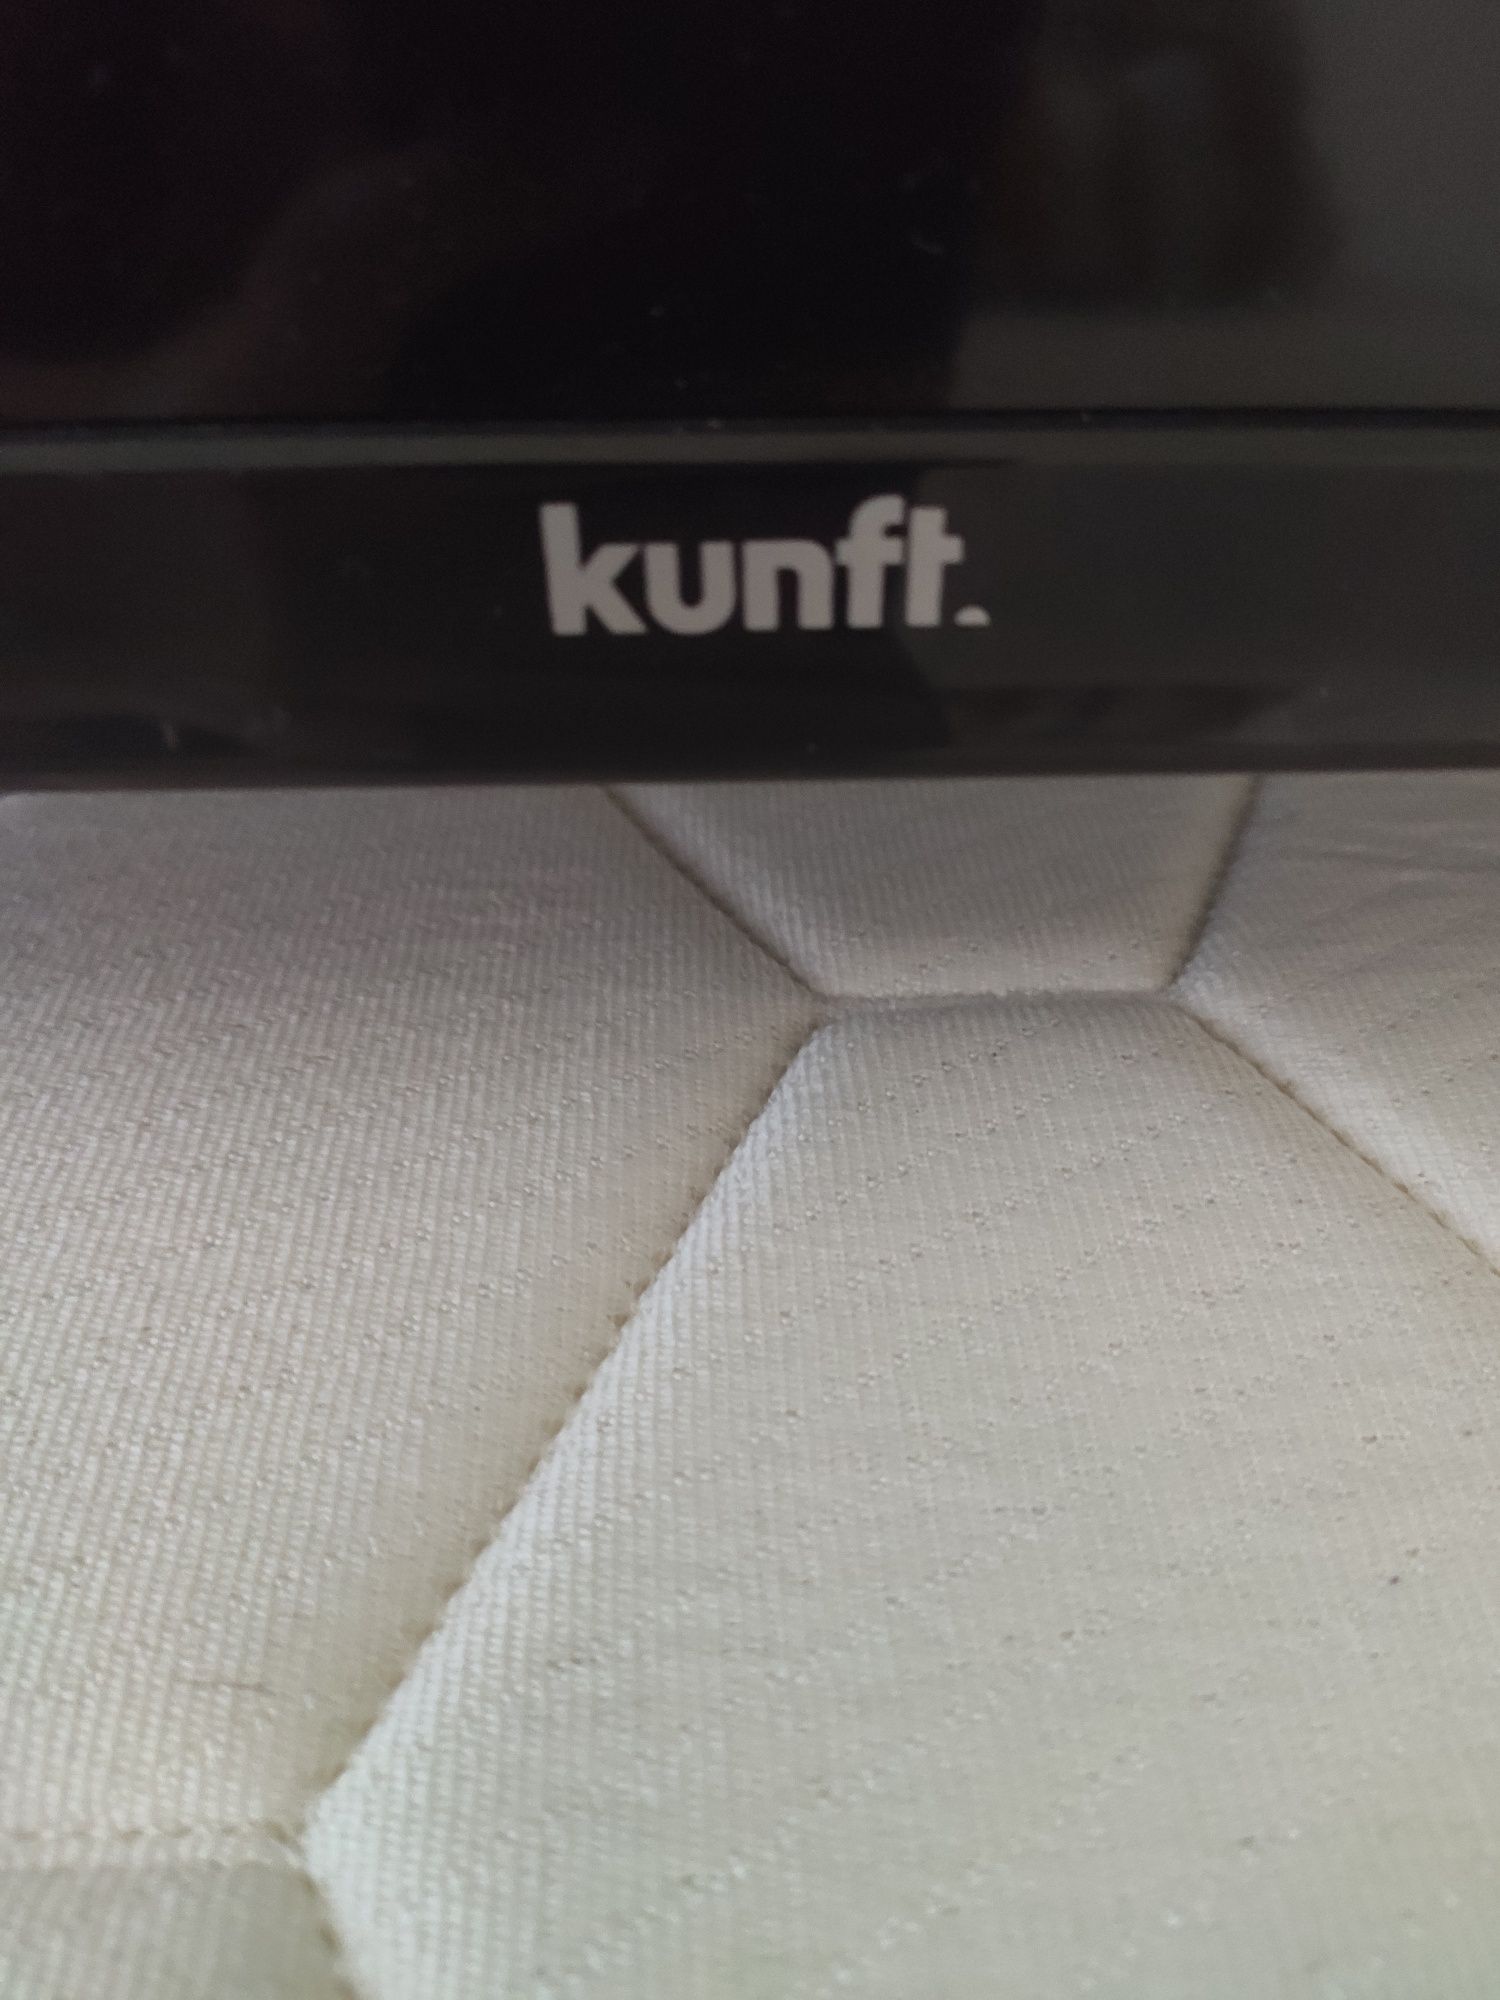 Televisão marca Kunft